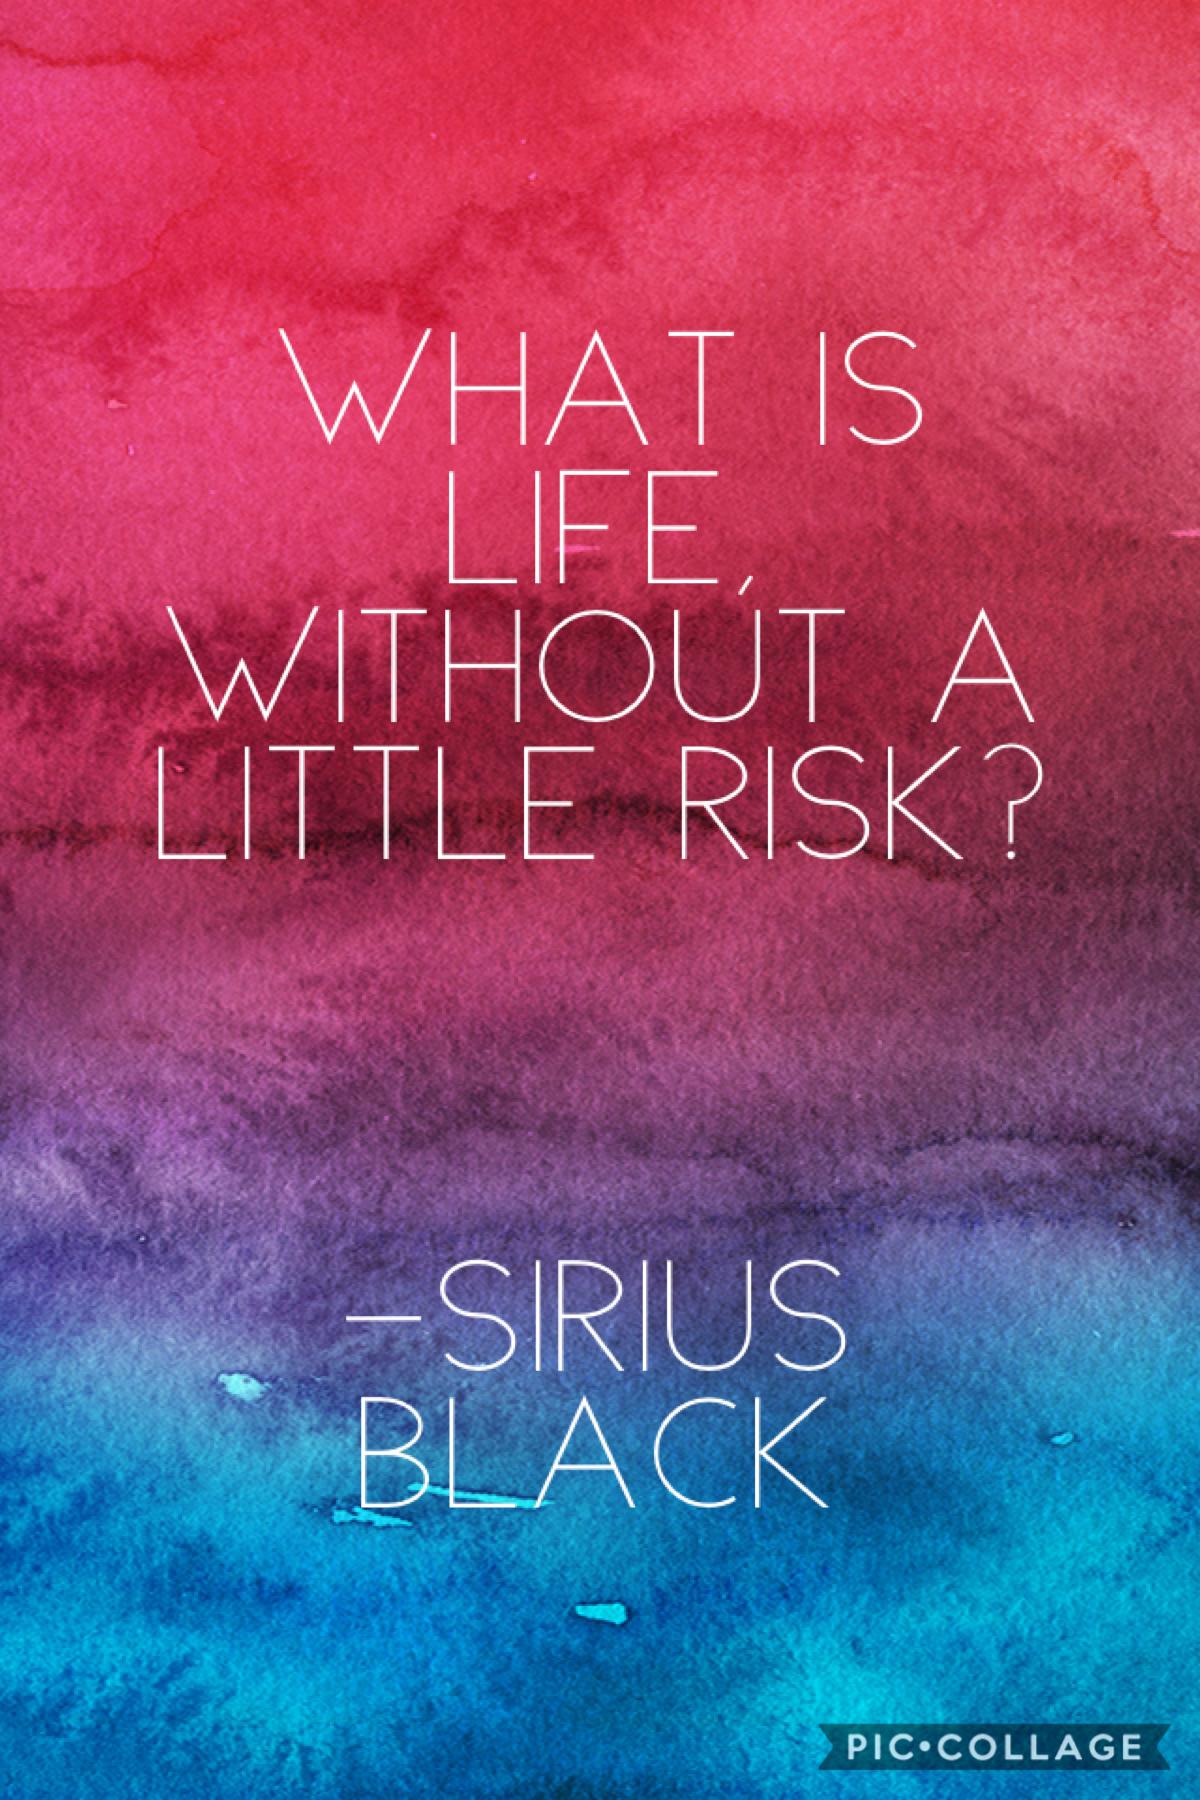 Sirius Black quote 